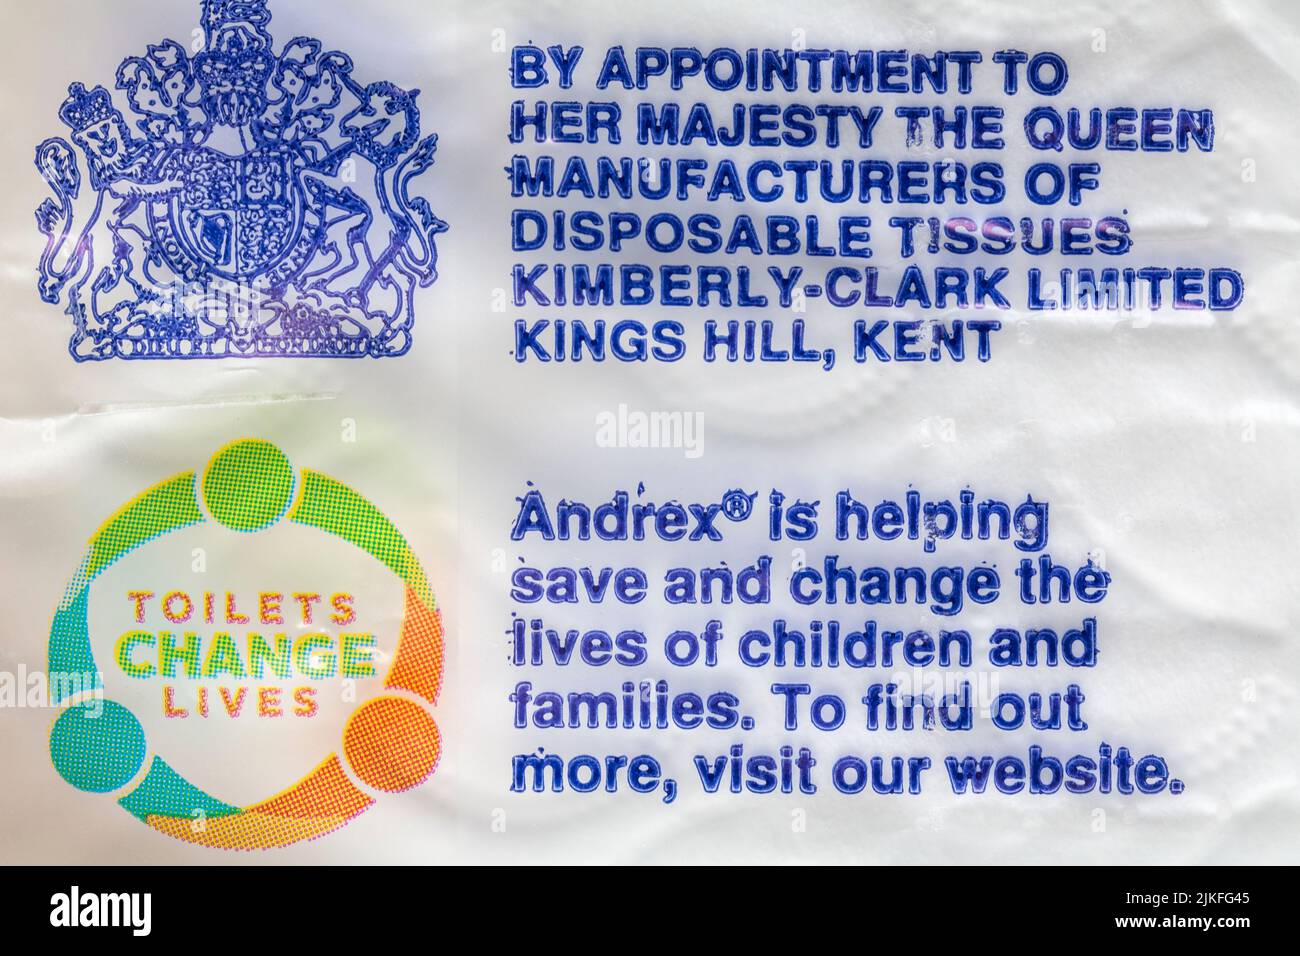 Gabinetti Cambia vite Andrex sta aiutando a salvare e cambiare la vita dei bambini e delle famiglie - dettaglio su confezione di carta igienica Andrex - Royal warrant Foto Stock